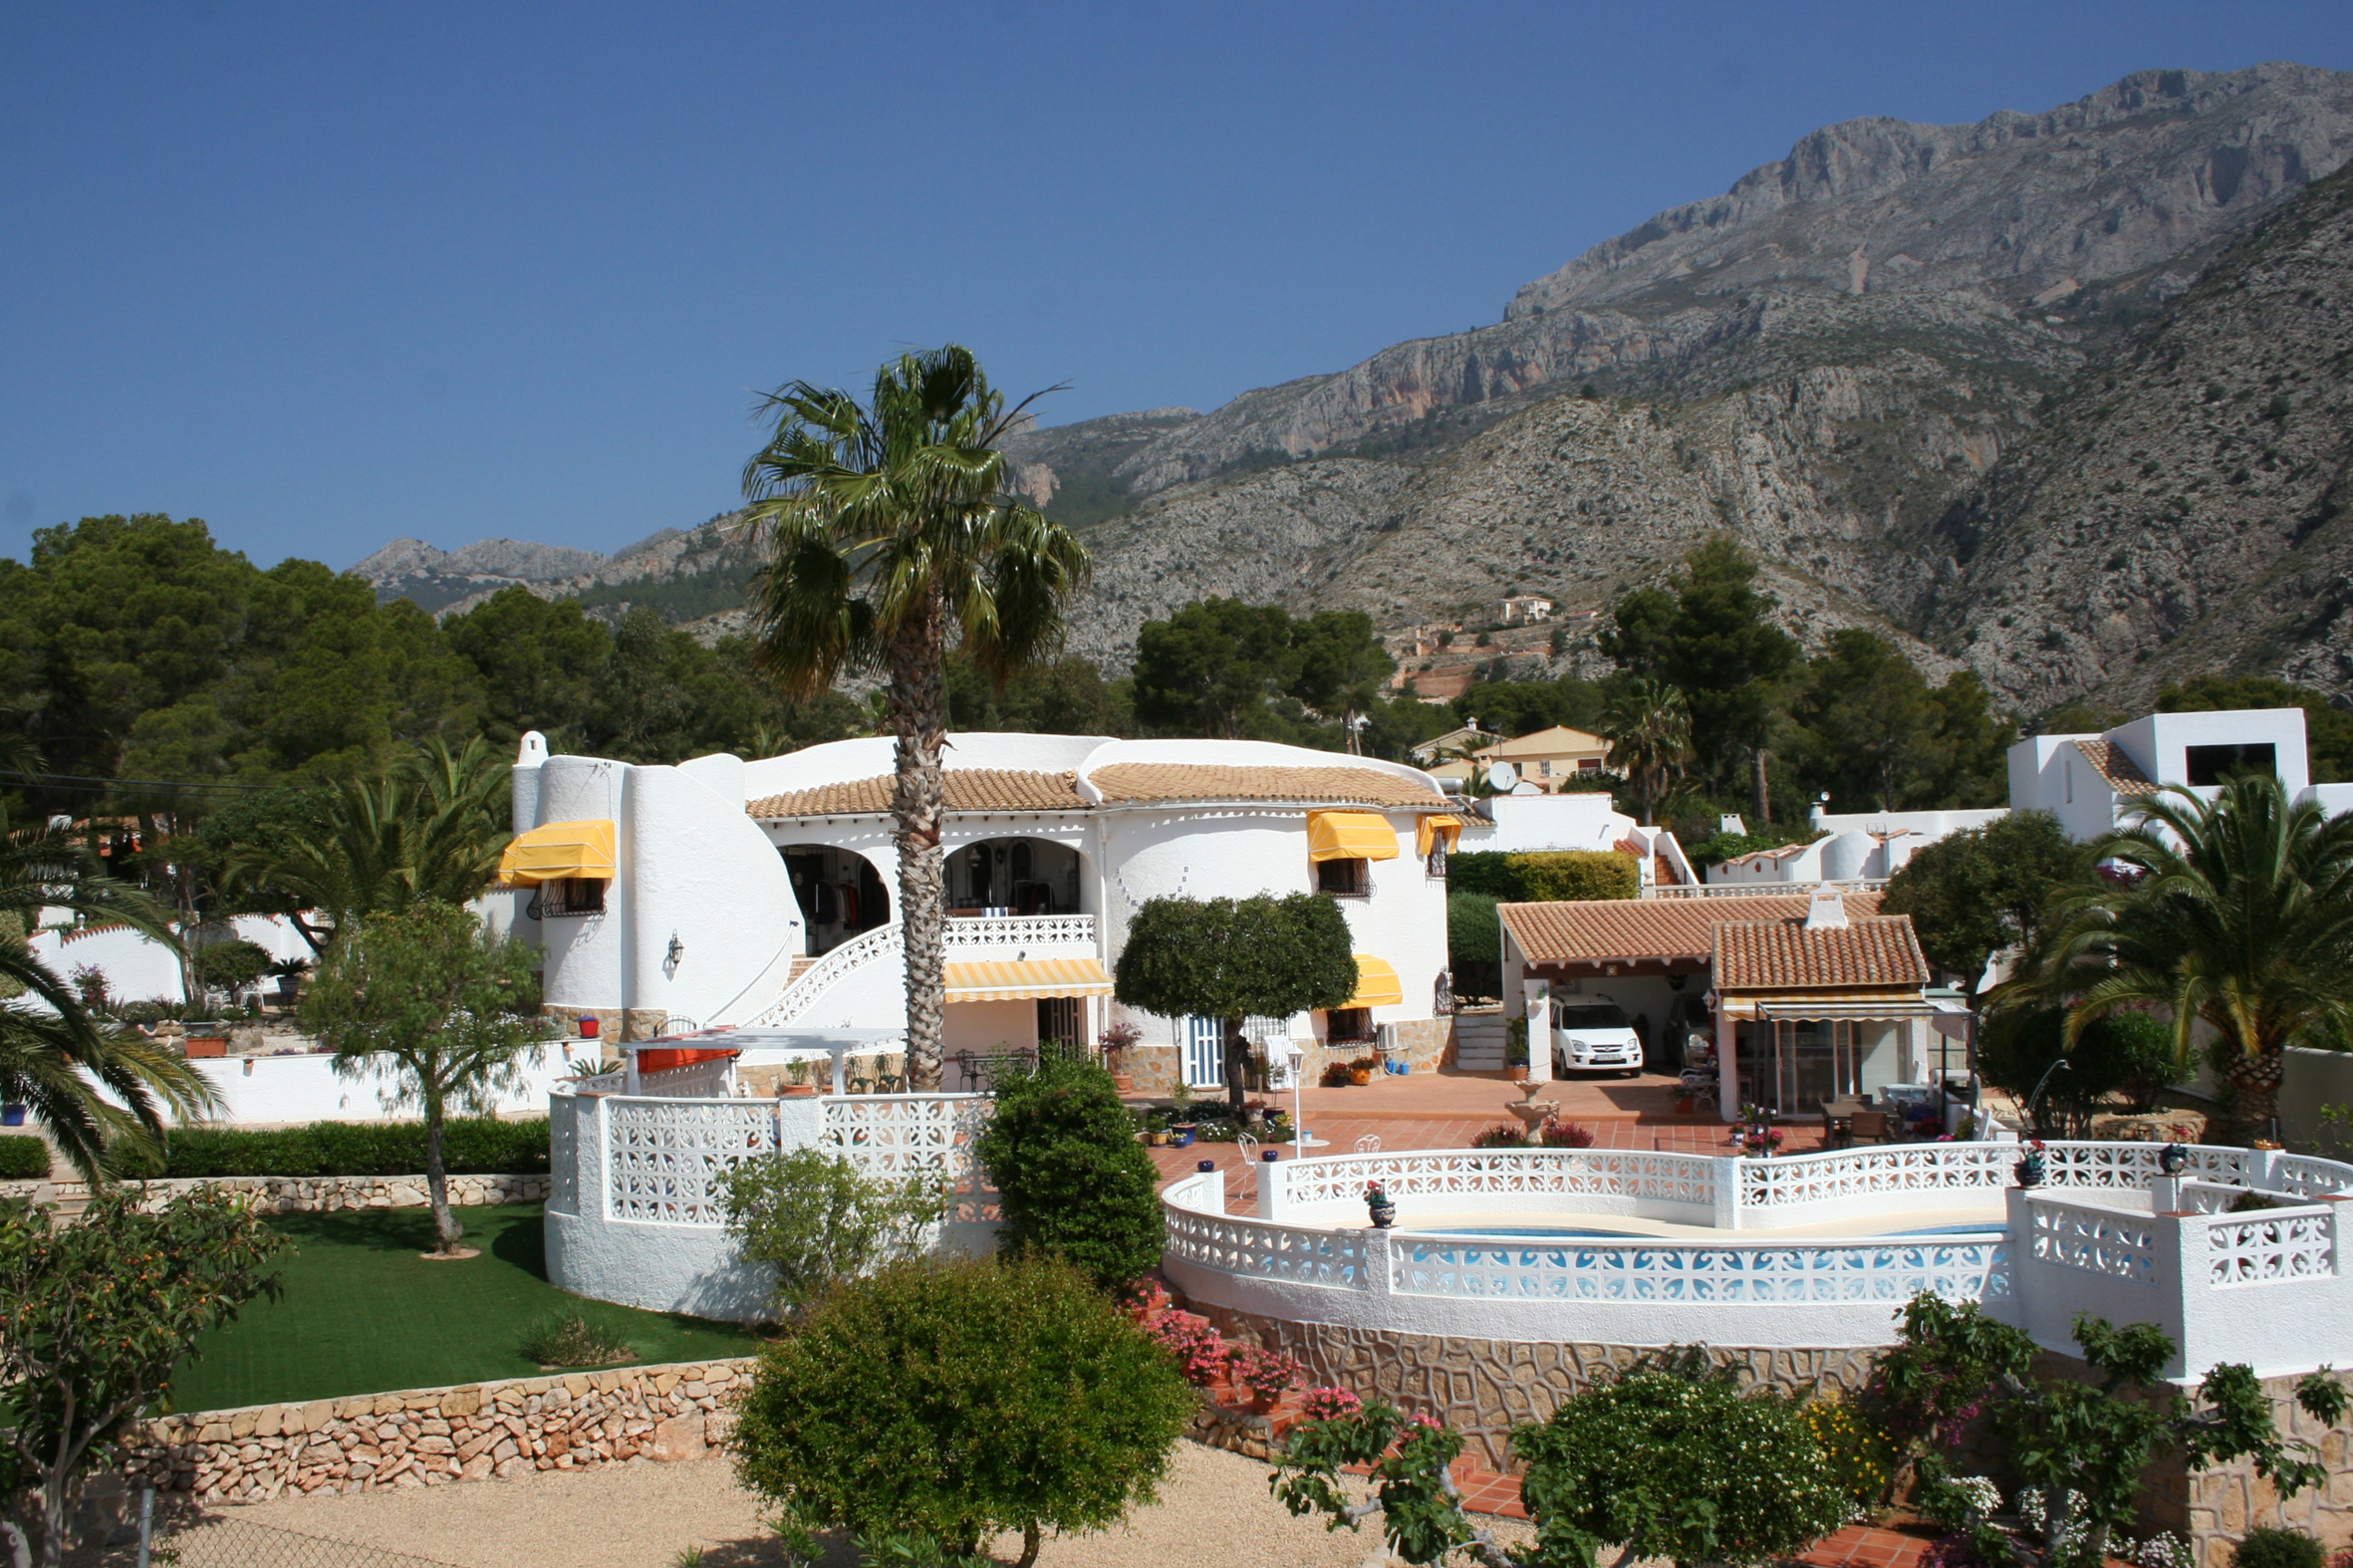 Pittoreske villa in Ibiza-stijl in Paraiso Altea